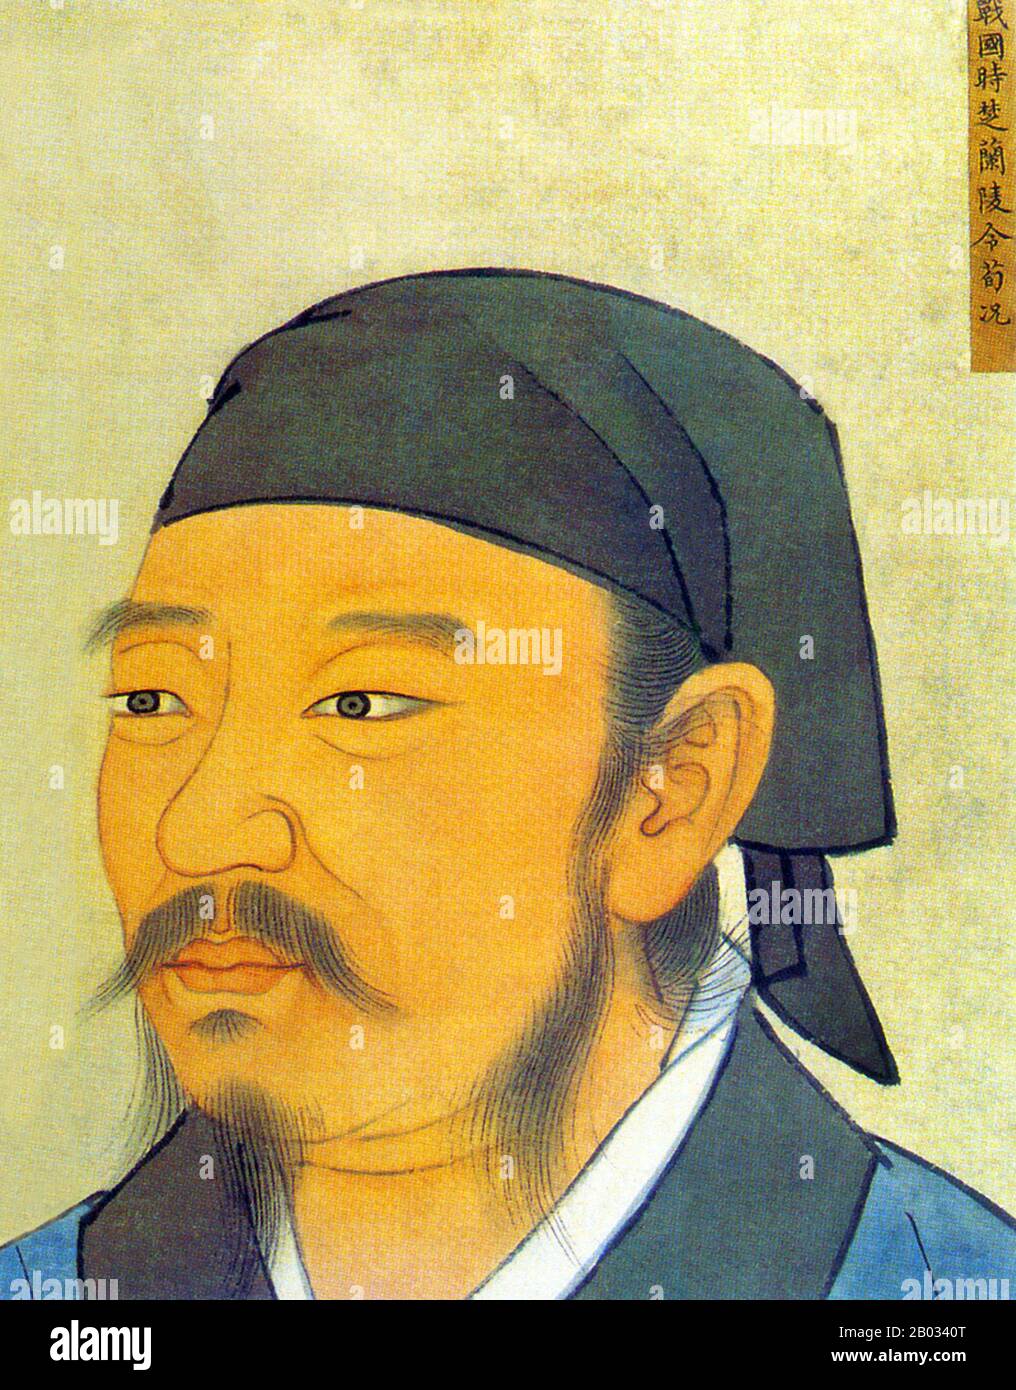 Xun Kuang était un philosophe confucéen Réaliste chinois qui a vécu pendant la période des États Belligérants et a contribué à l'une Des Cent écoles De Pensée. Un livre connu sous le nom de Xunzi, une collection influente d'essais, lui est traditionnellement attribué. Xunzi a été témoin du chaos entourant la chute de la dynastie Zhou et de la montée de l'État Qin – qui a maintenu les doctrines légalistes axées sur le contrôle de l'État, par le biais de la loi et des sanctions. La variété du confucianisme de Xunzi a donc une saveur plus sombre et plus pragmatique que le confucianisme optimiste de Mencius, qui avait tendance à considérer les humains comme inna Banque D'Images